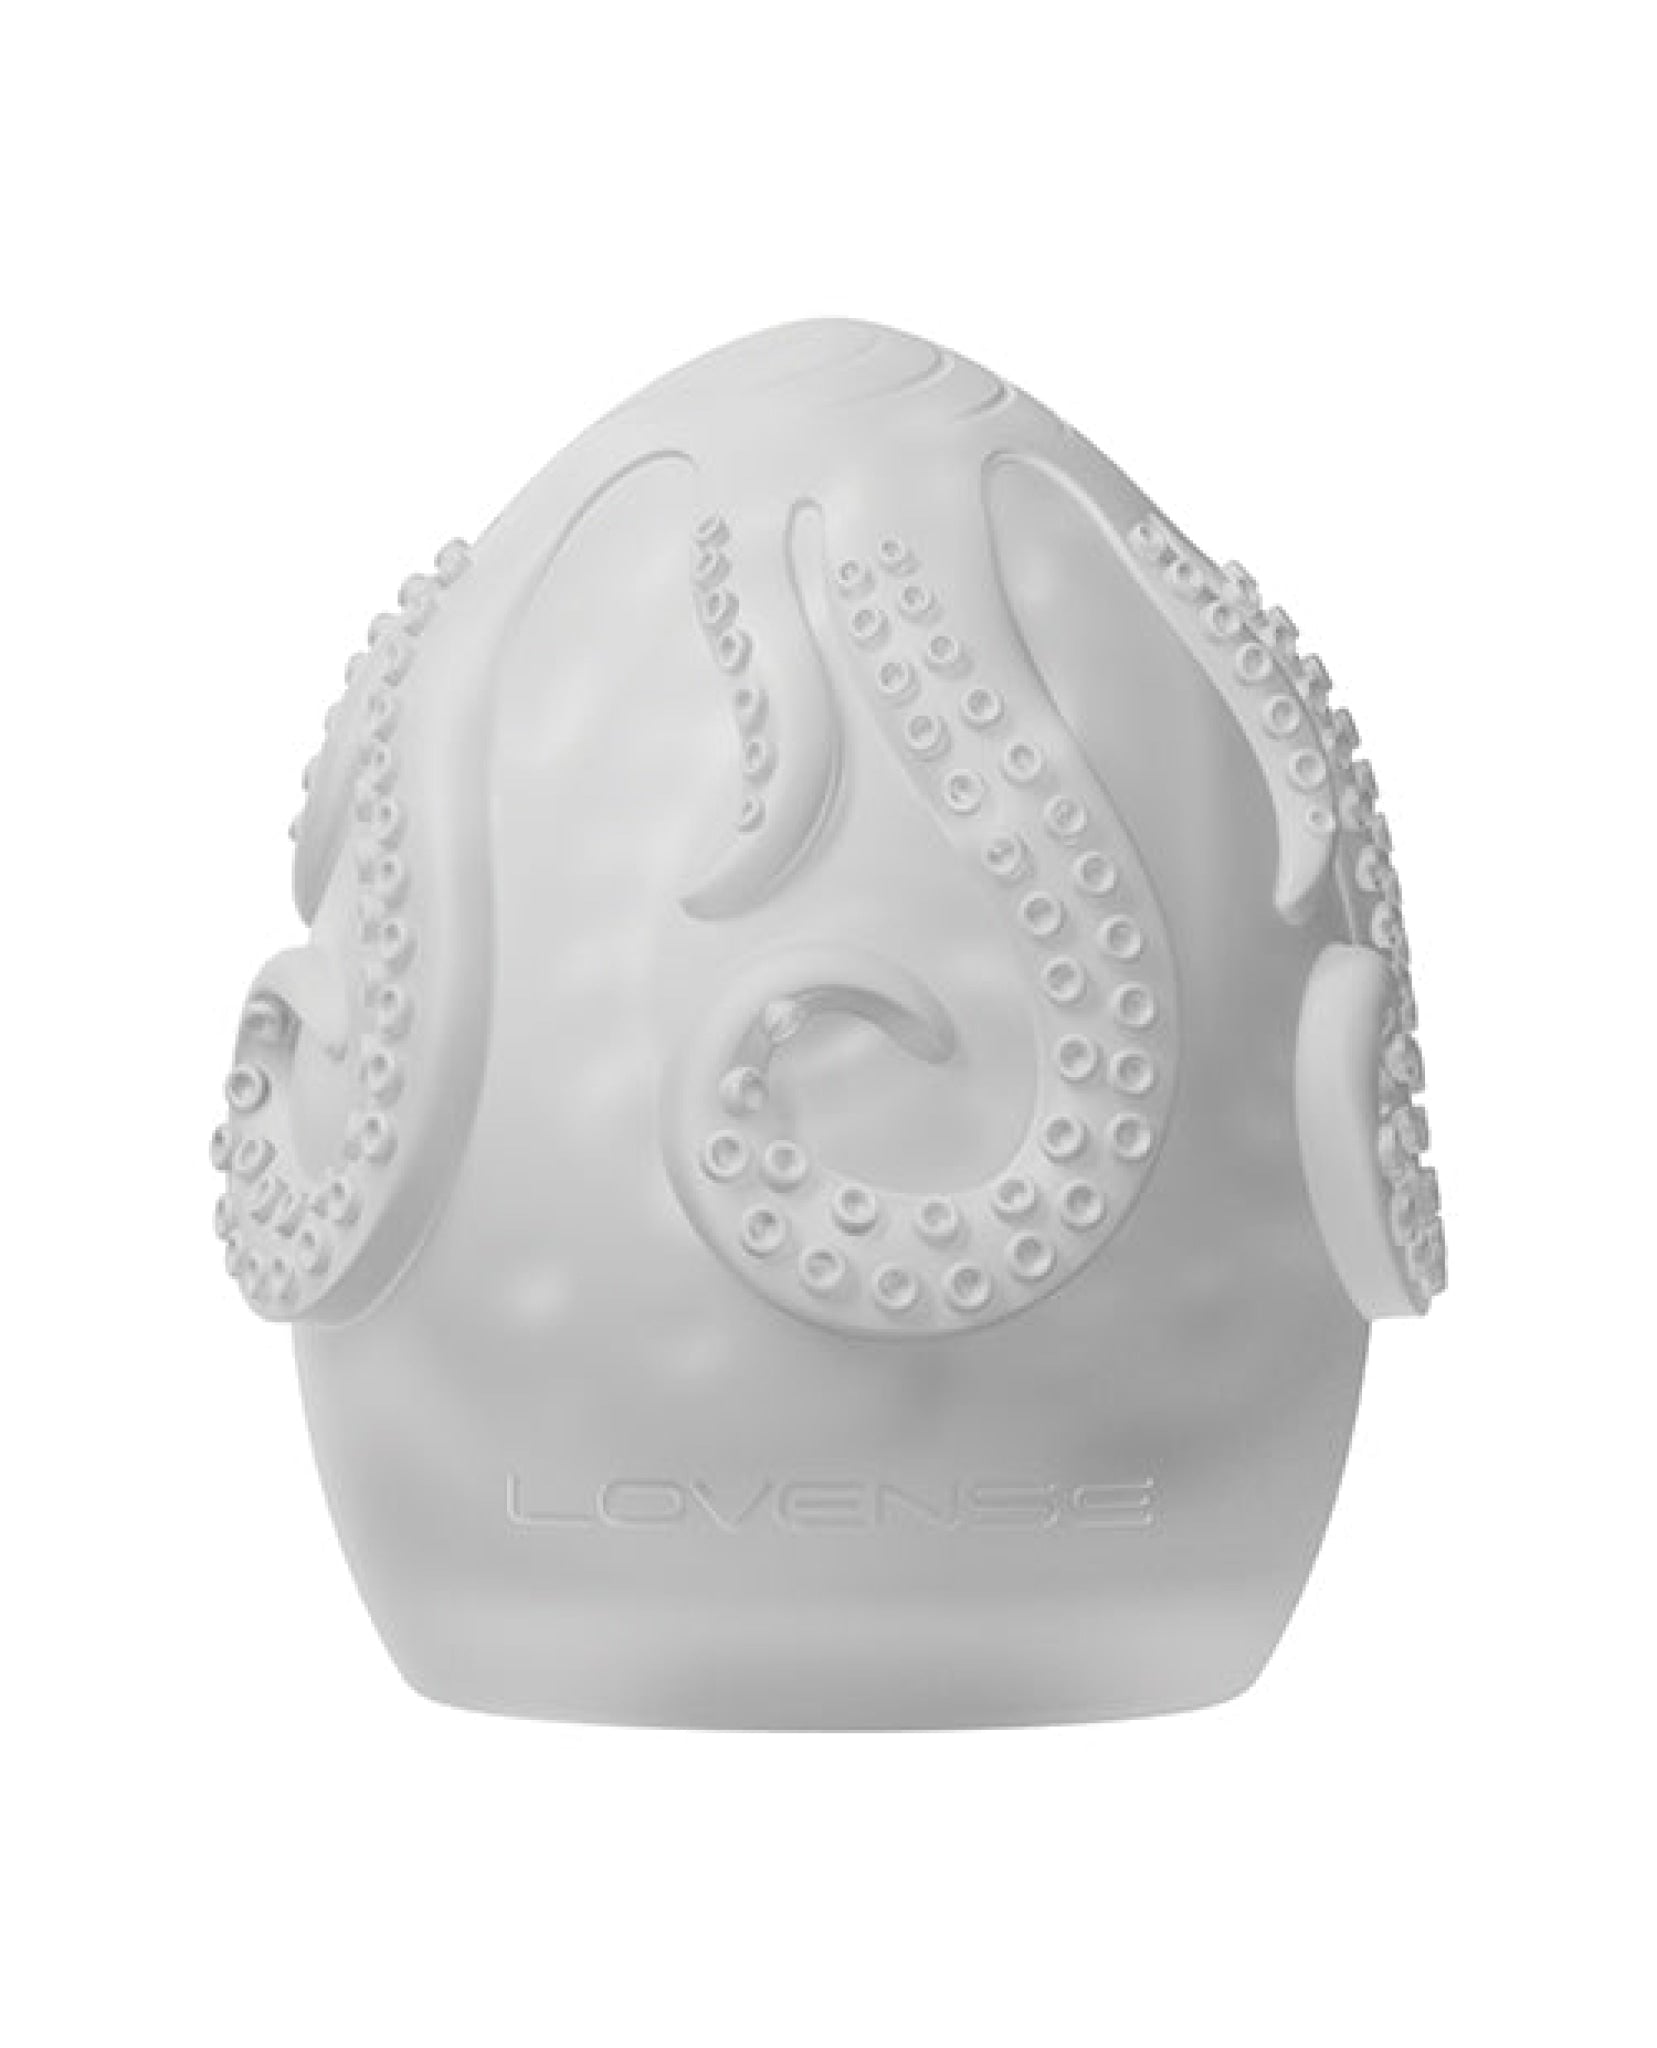 Lovense Kraken  Egg 6-pack - White Lovense®